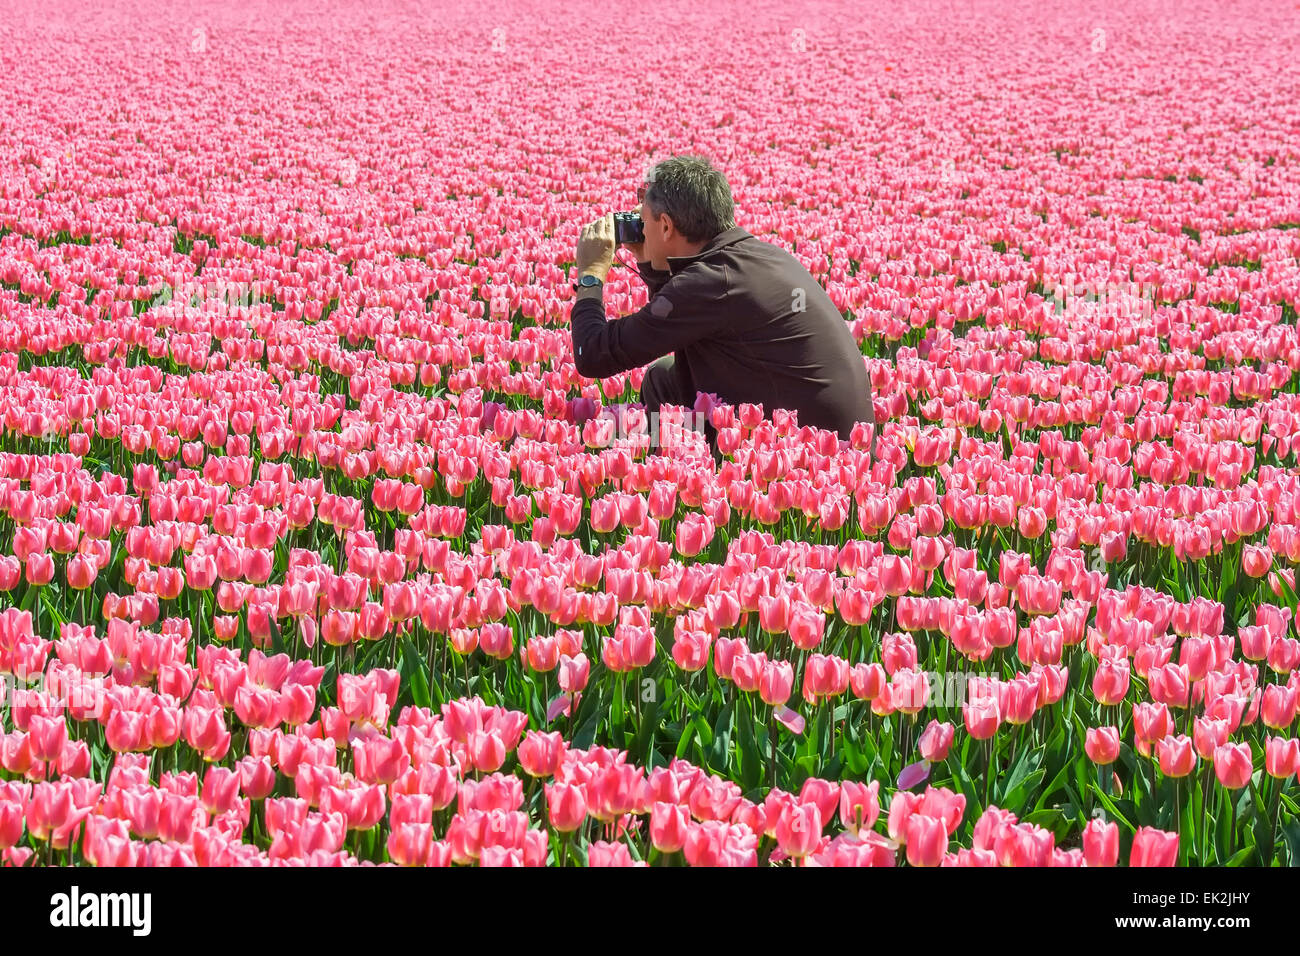 El hombre toma una imagen en un campo de tulipanes Foto de stock